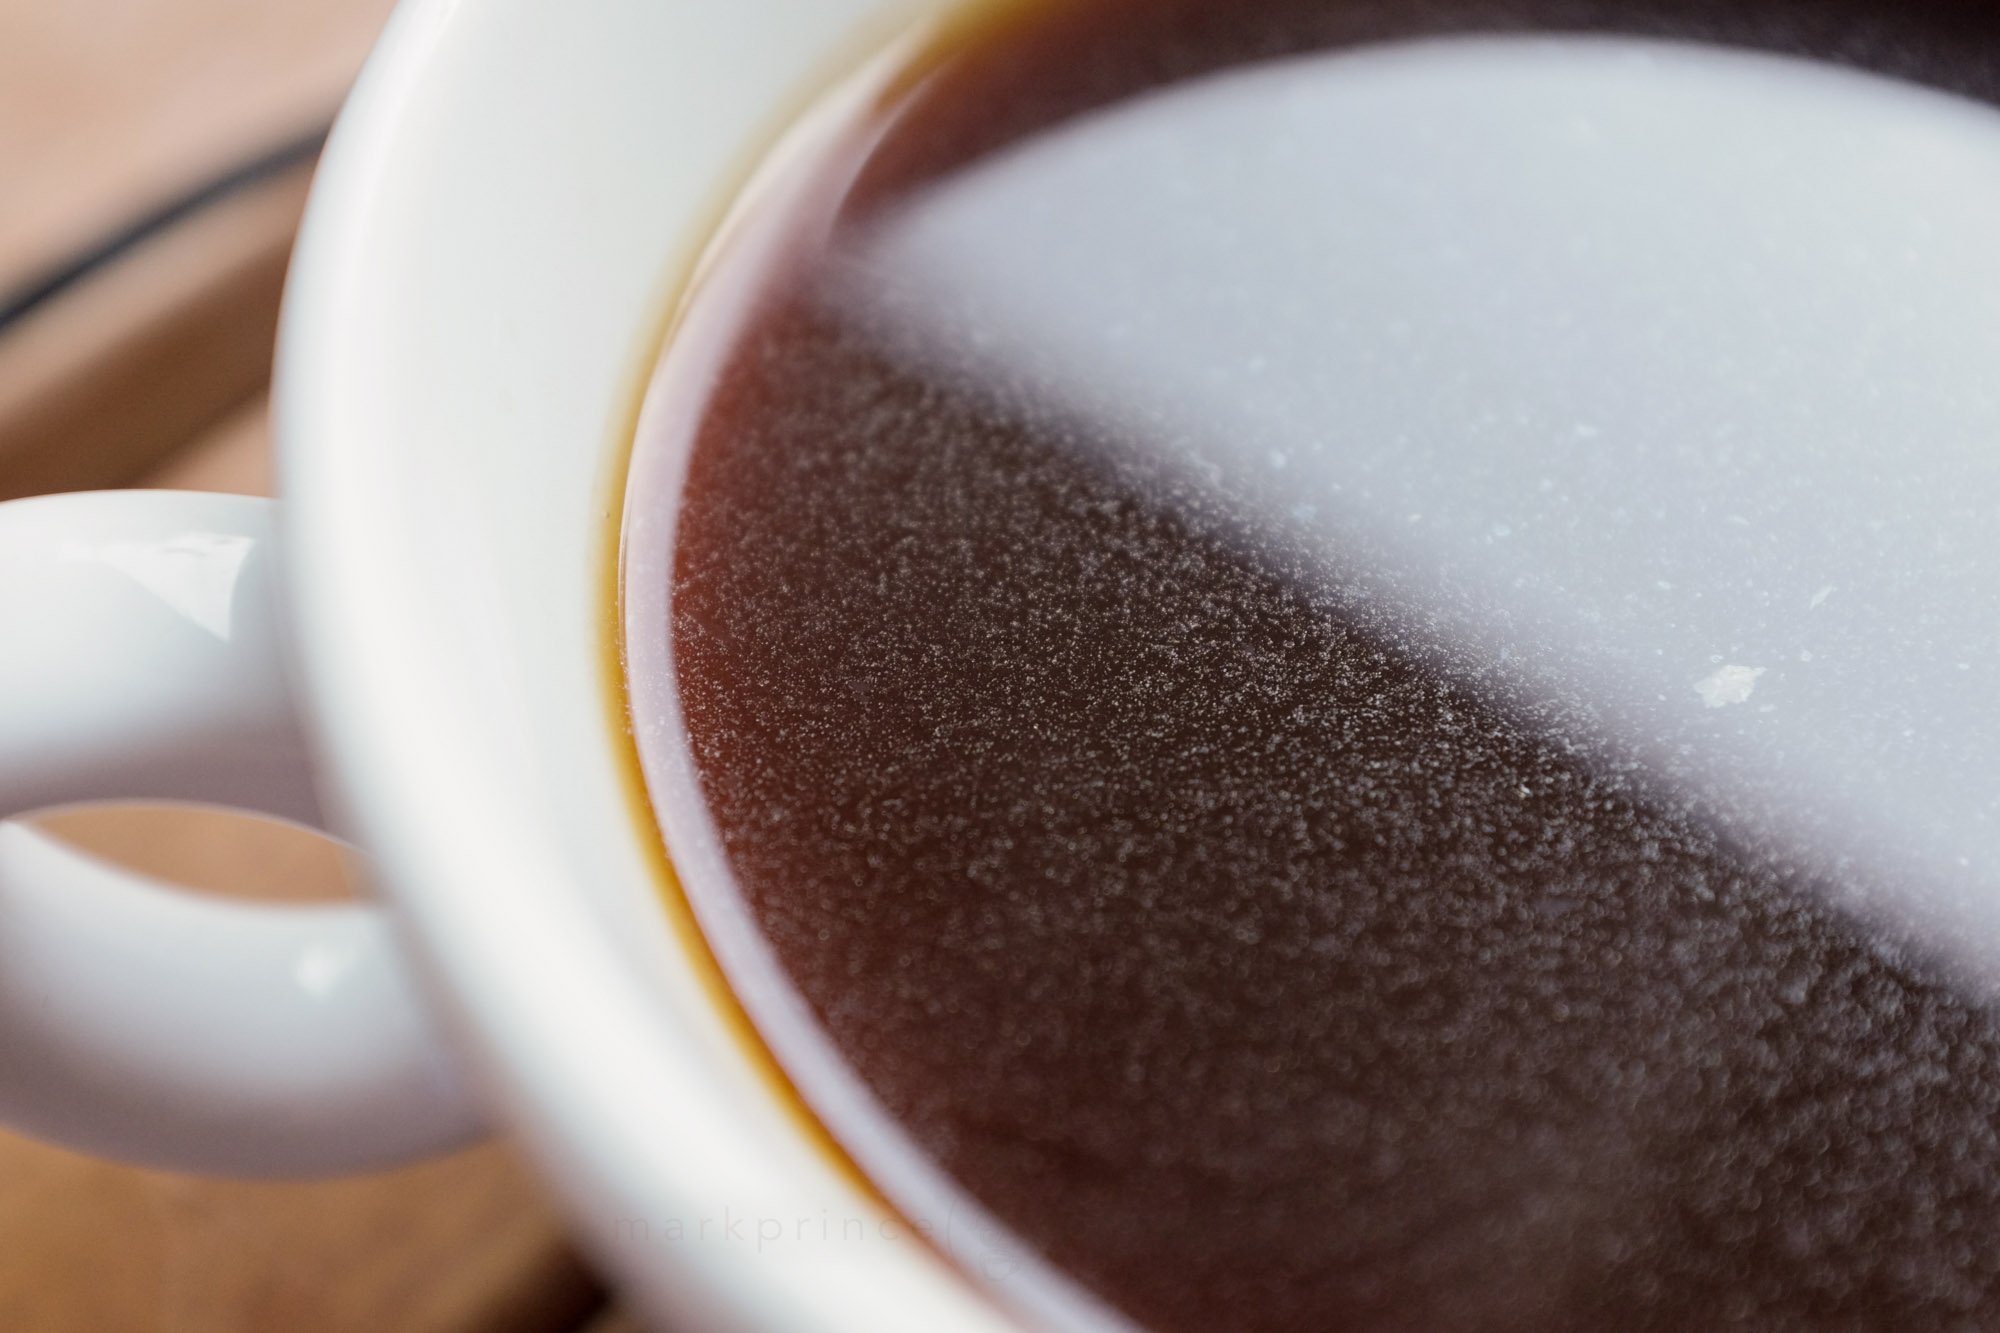 CoffeeGeek: Best Espresso Gifts Under $600 Holidays 2023